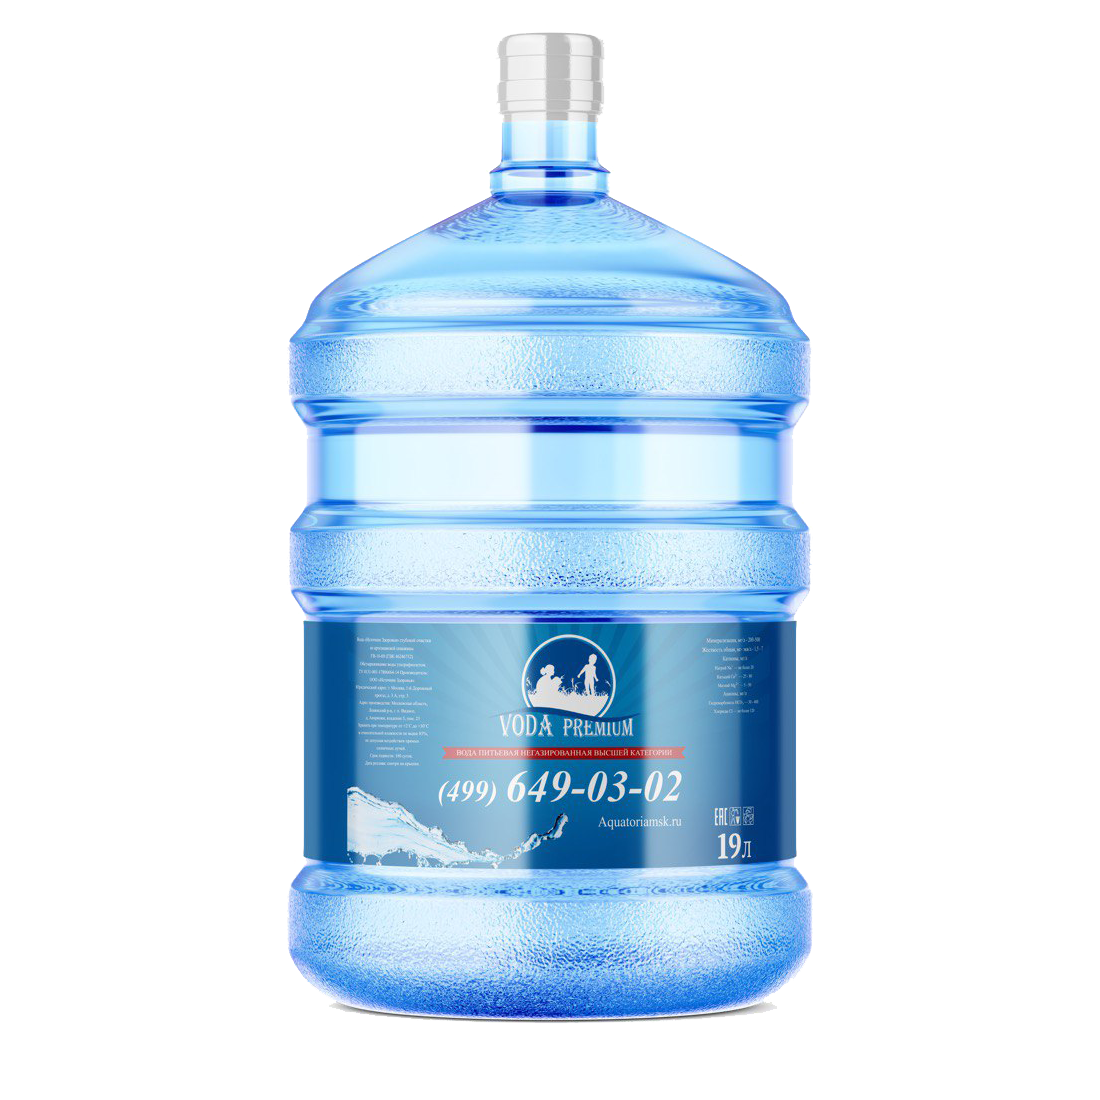 Питьевая артезианская вода "Премиум" 19л Высшей категории